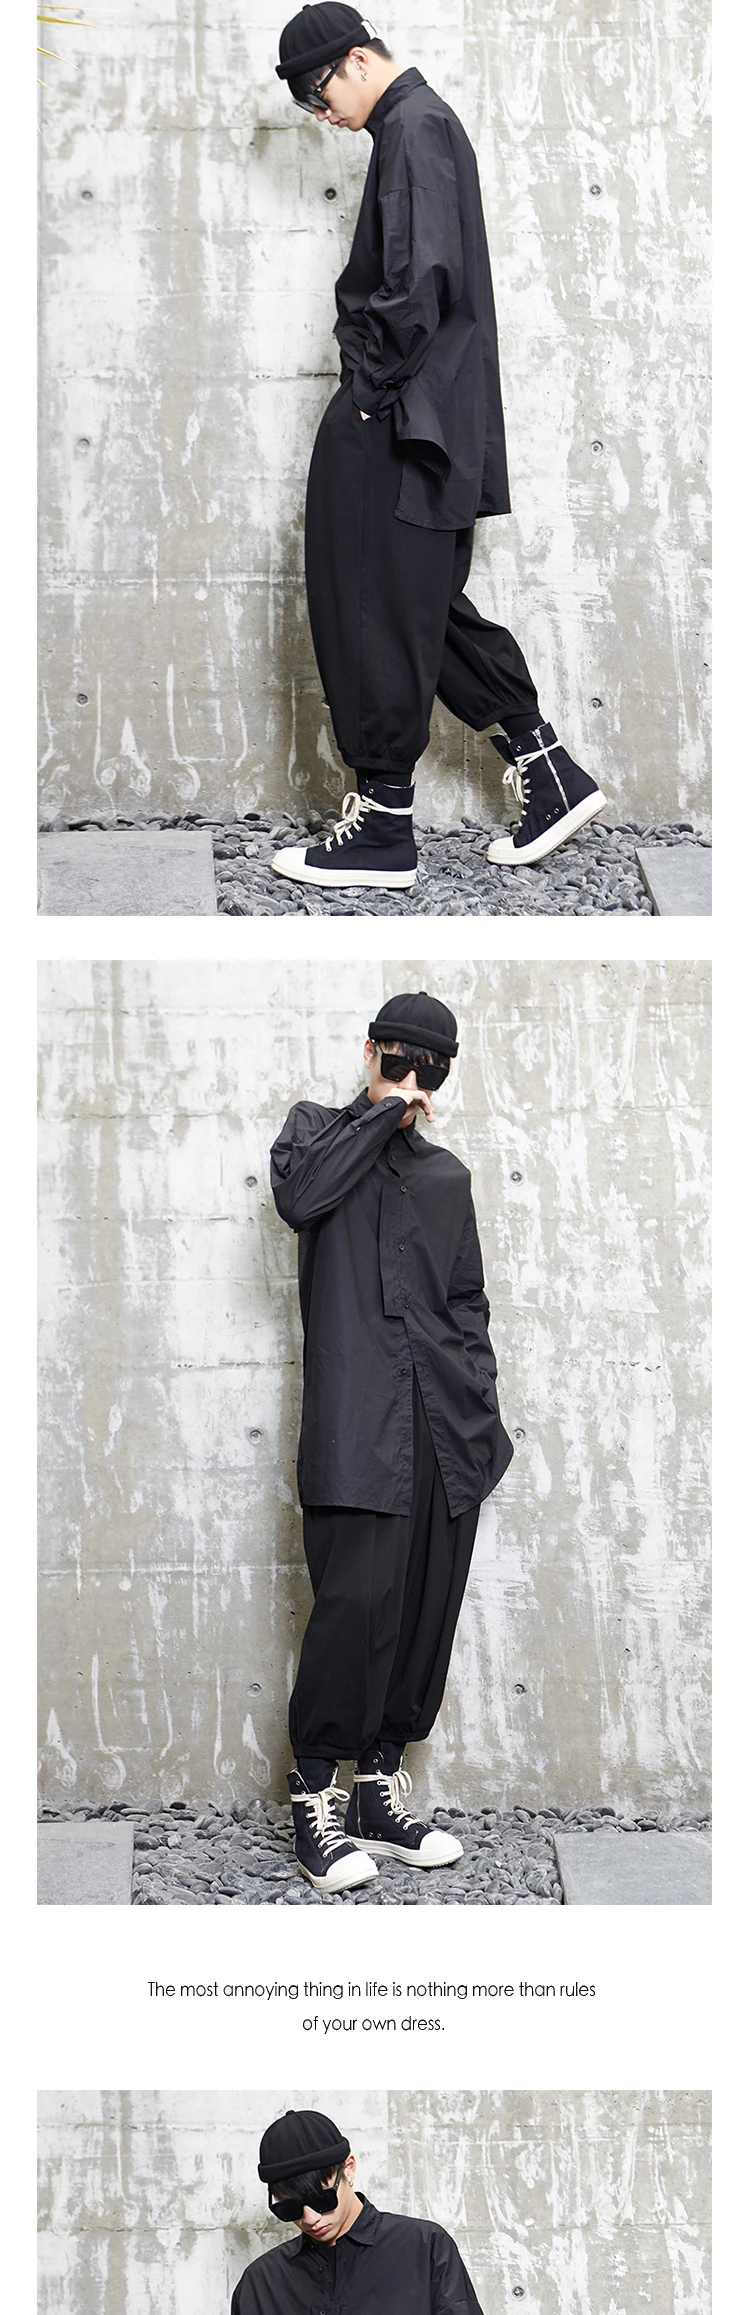 Bumpybeast дизайн сезон Ямамото Яо Стиль Темный японский длинный рукав мужская рубашка черный хип хоп топы Y008